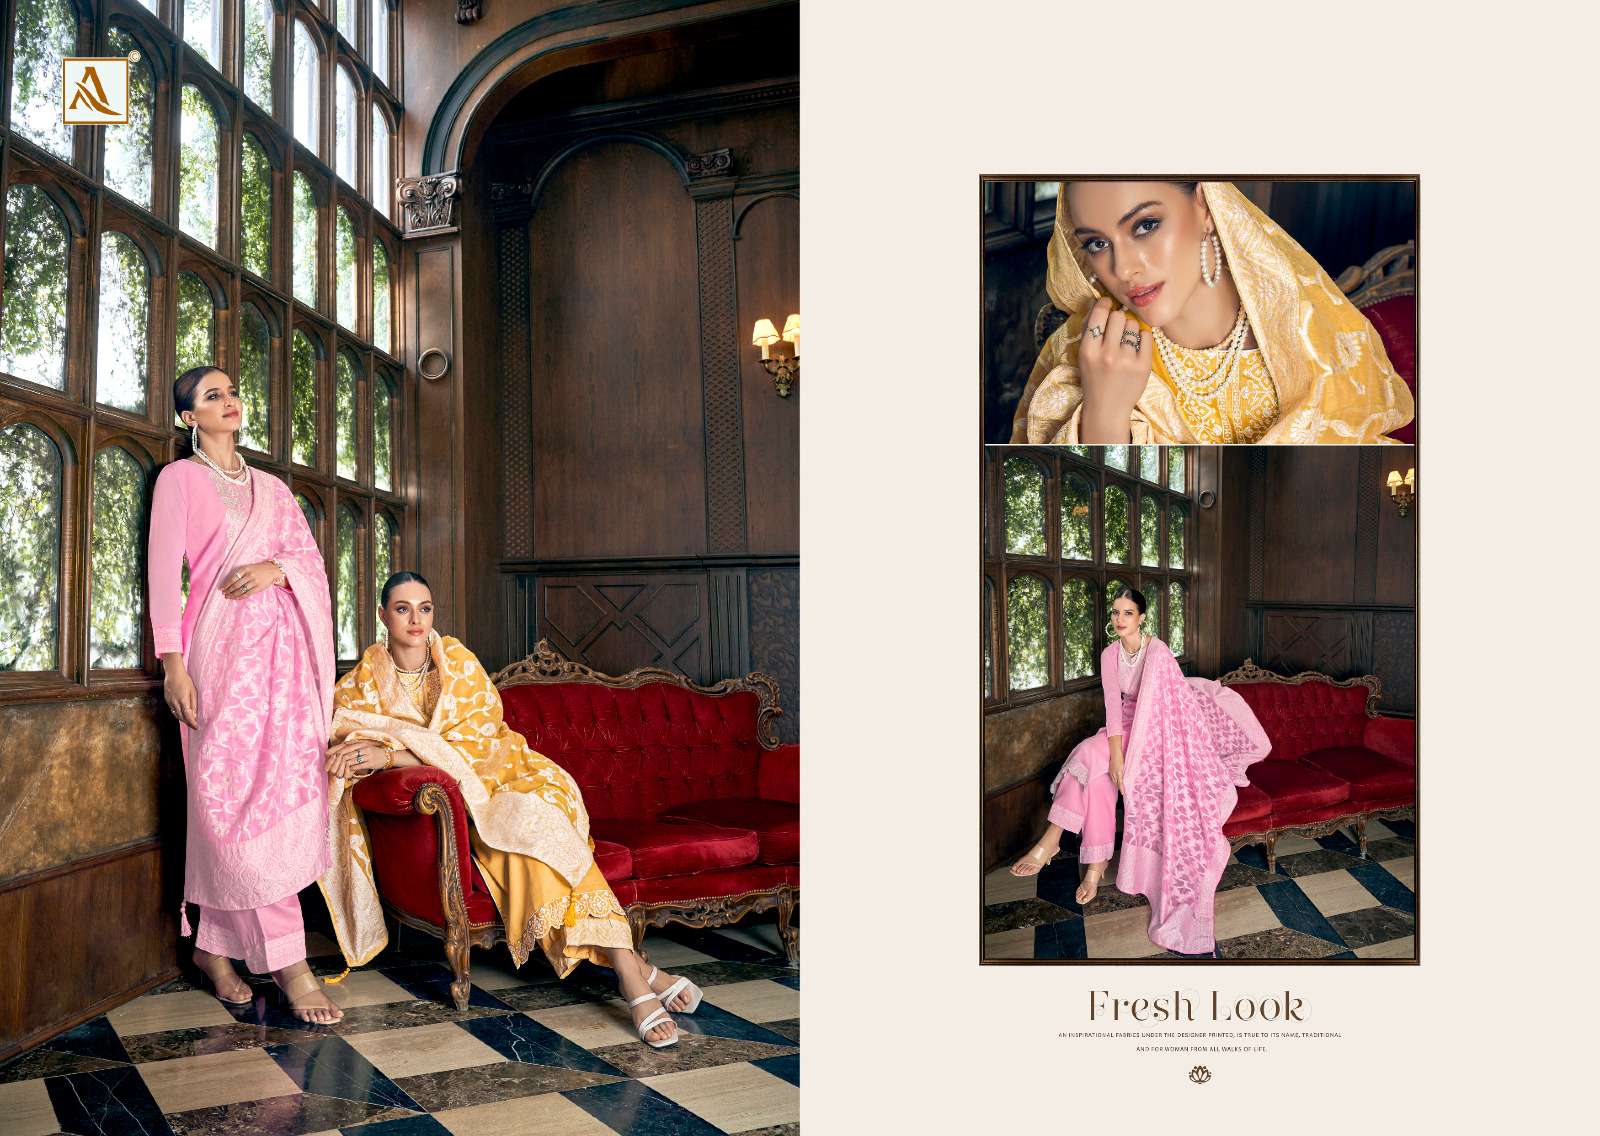 alok suit classic touch edition vol-12 unstich designer salwar kameez catalogue wholesale surat 